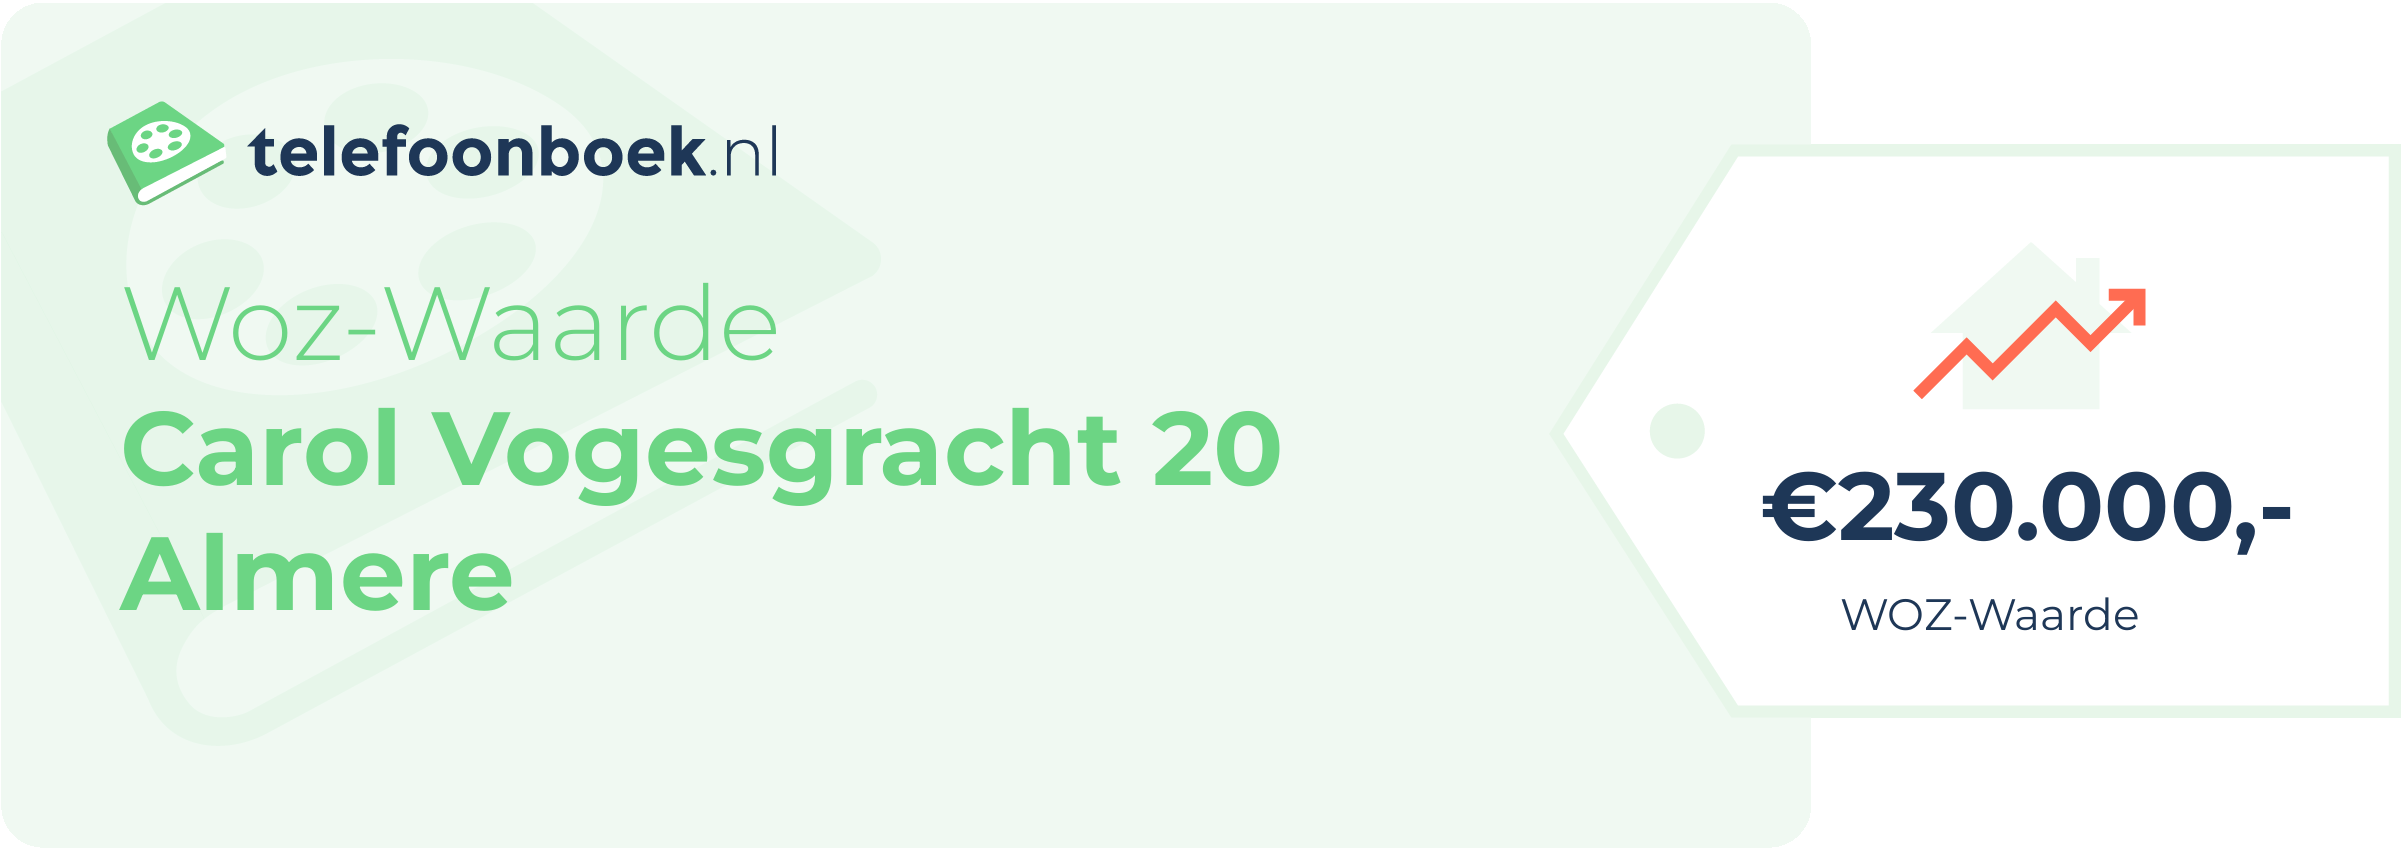 WOZ-waarde Carol Vogesgracht 20 Almere